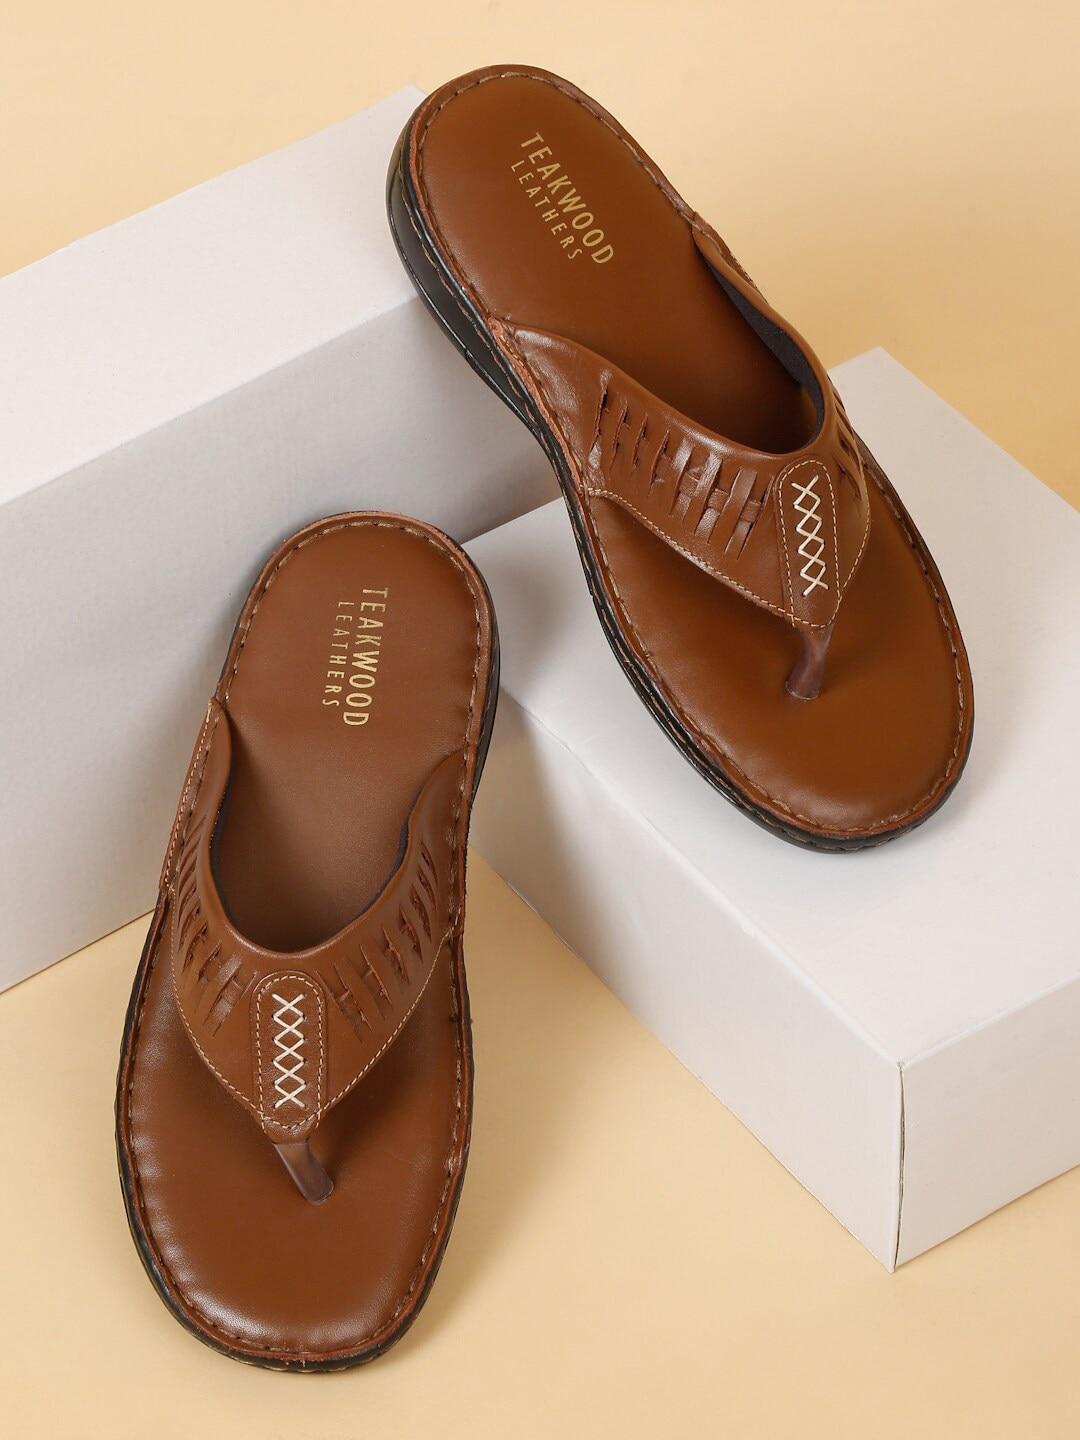 teakwood leathers men textured leather comfort sandals